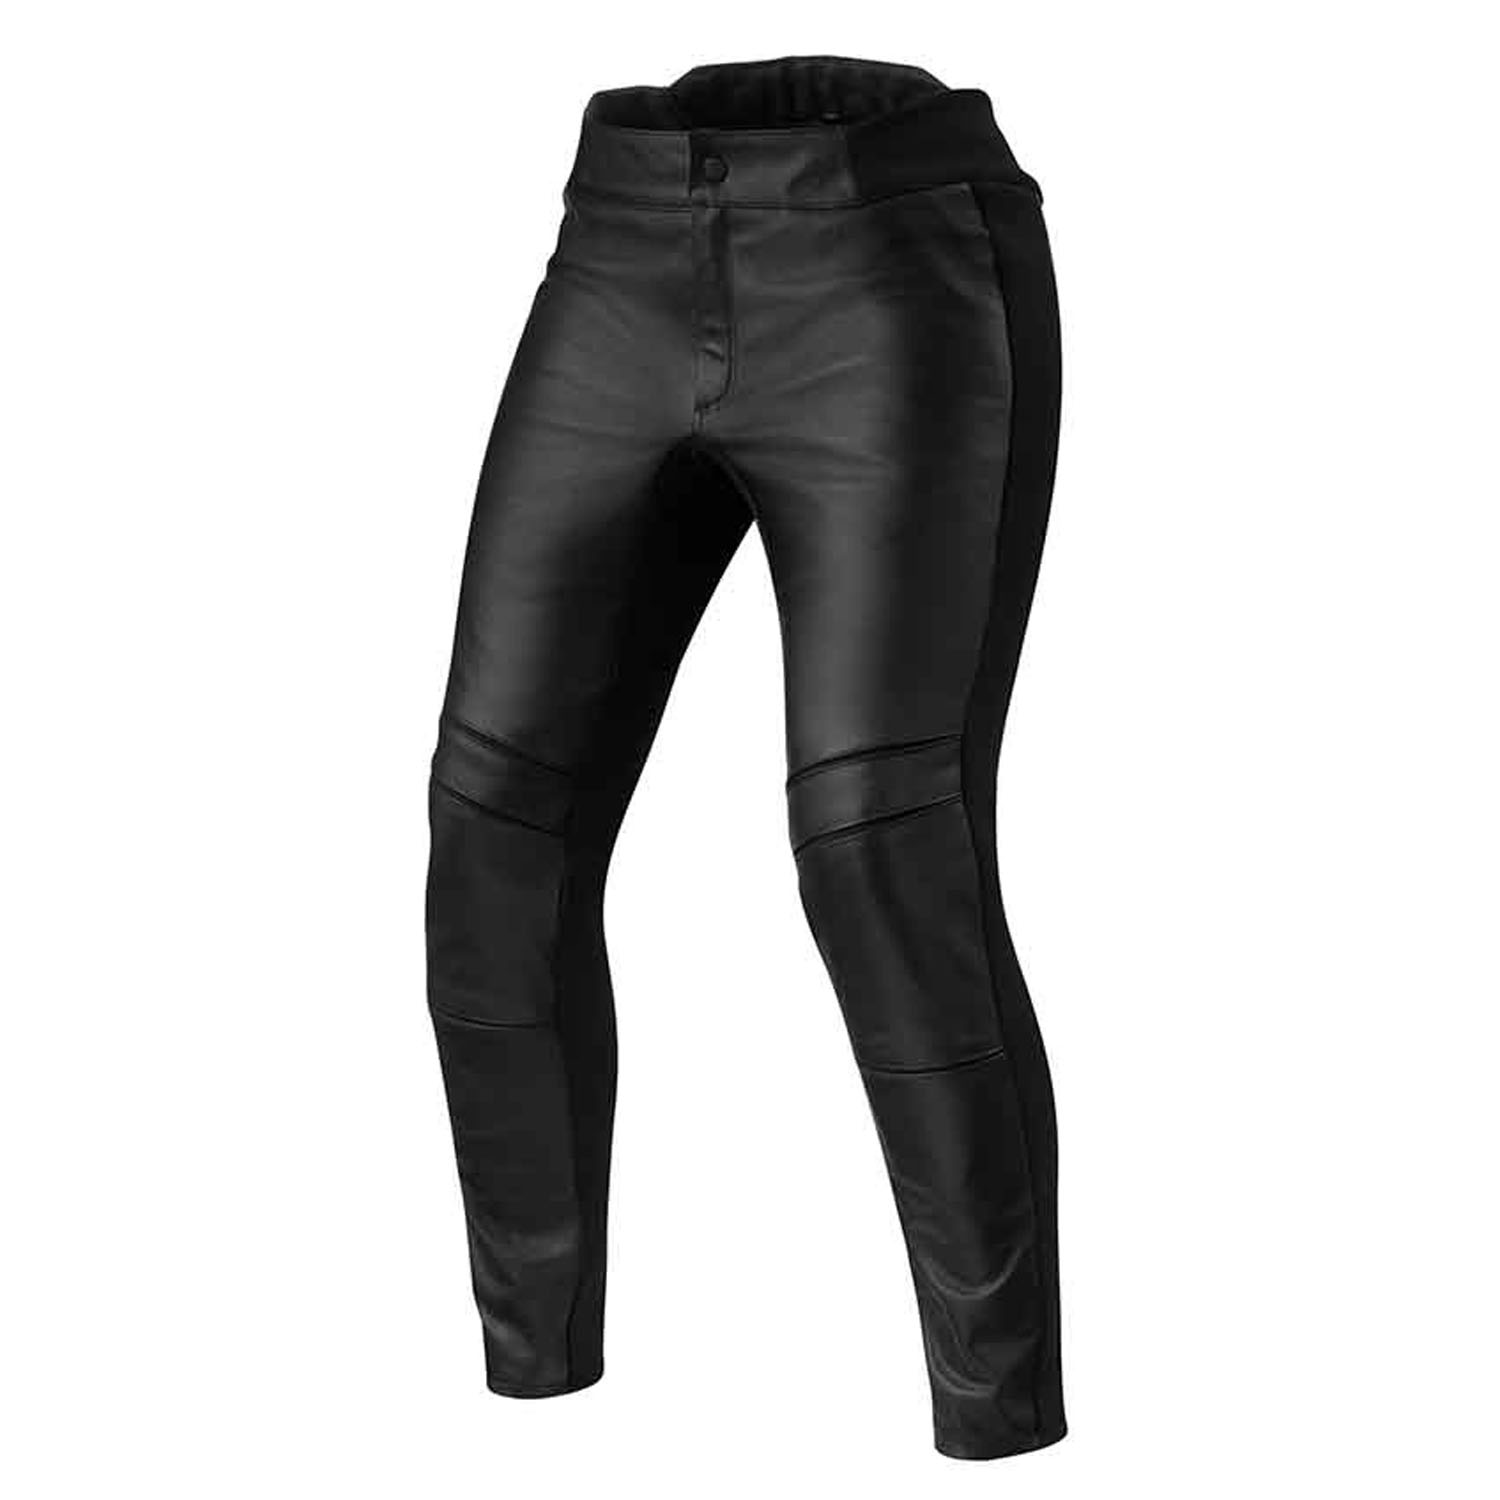 Image of REV'IT! Maci Ladies Black Standard Motorcycle Pants Size 42 EN